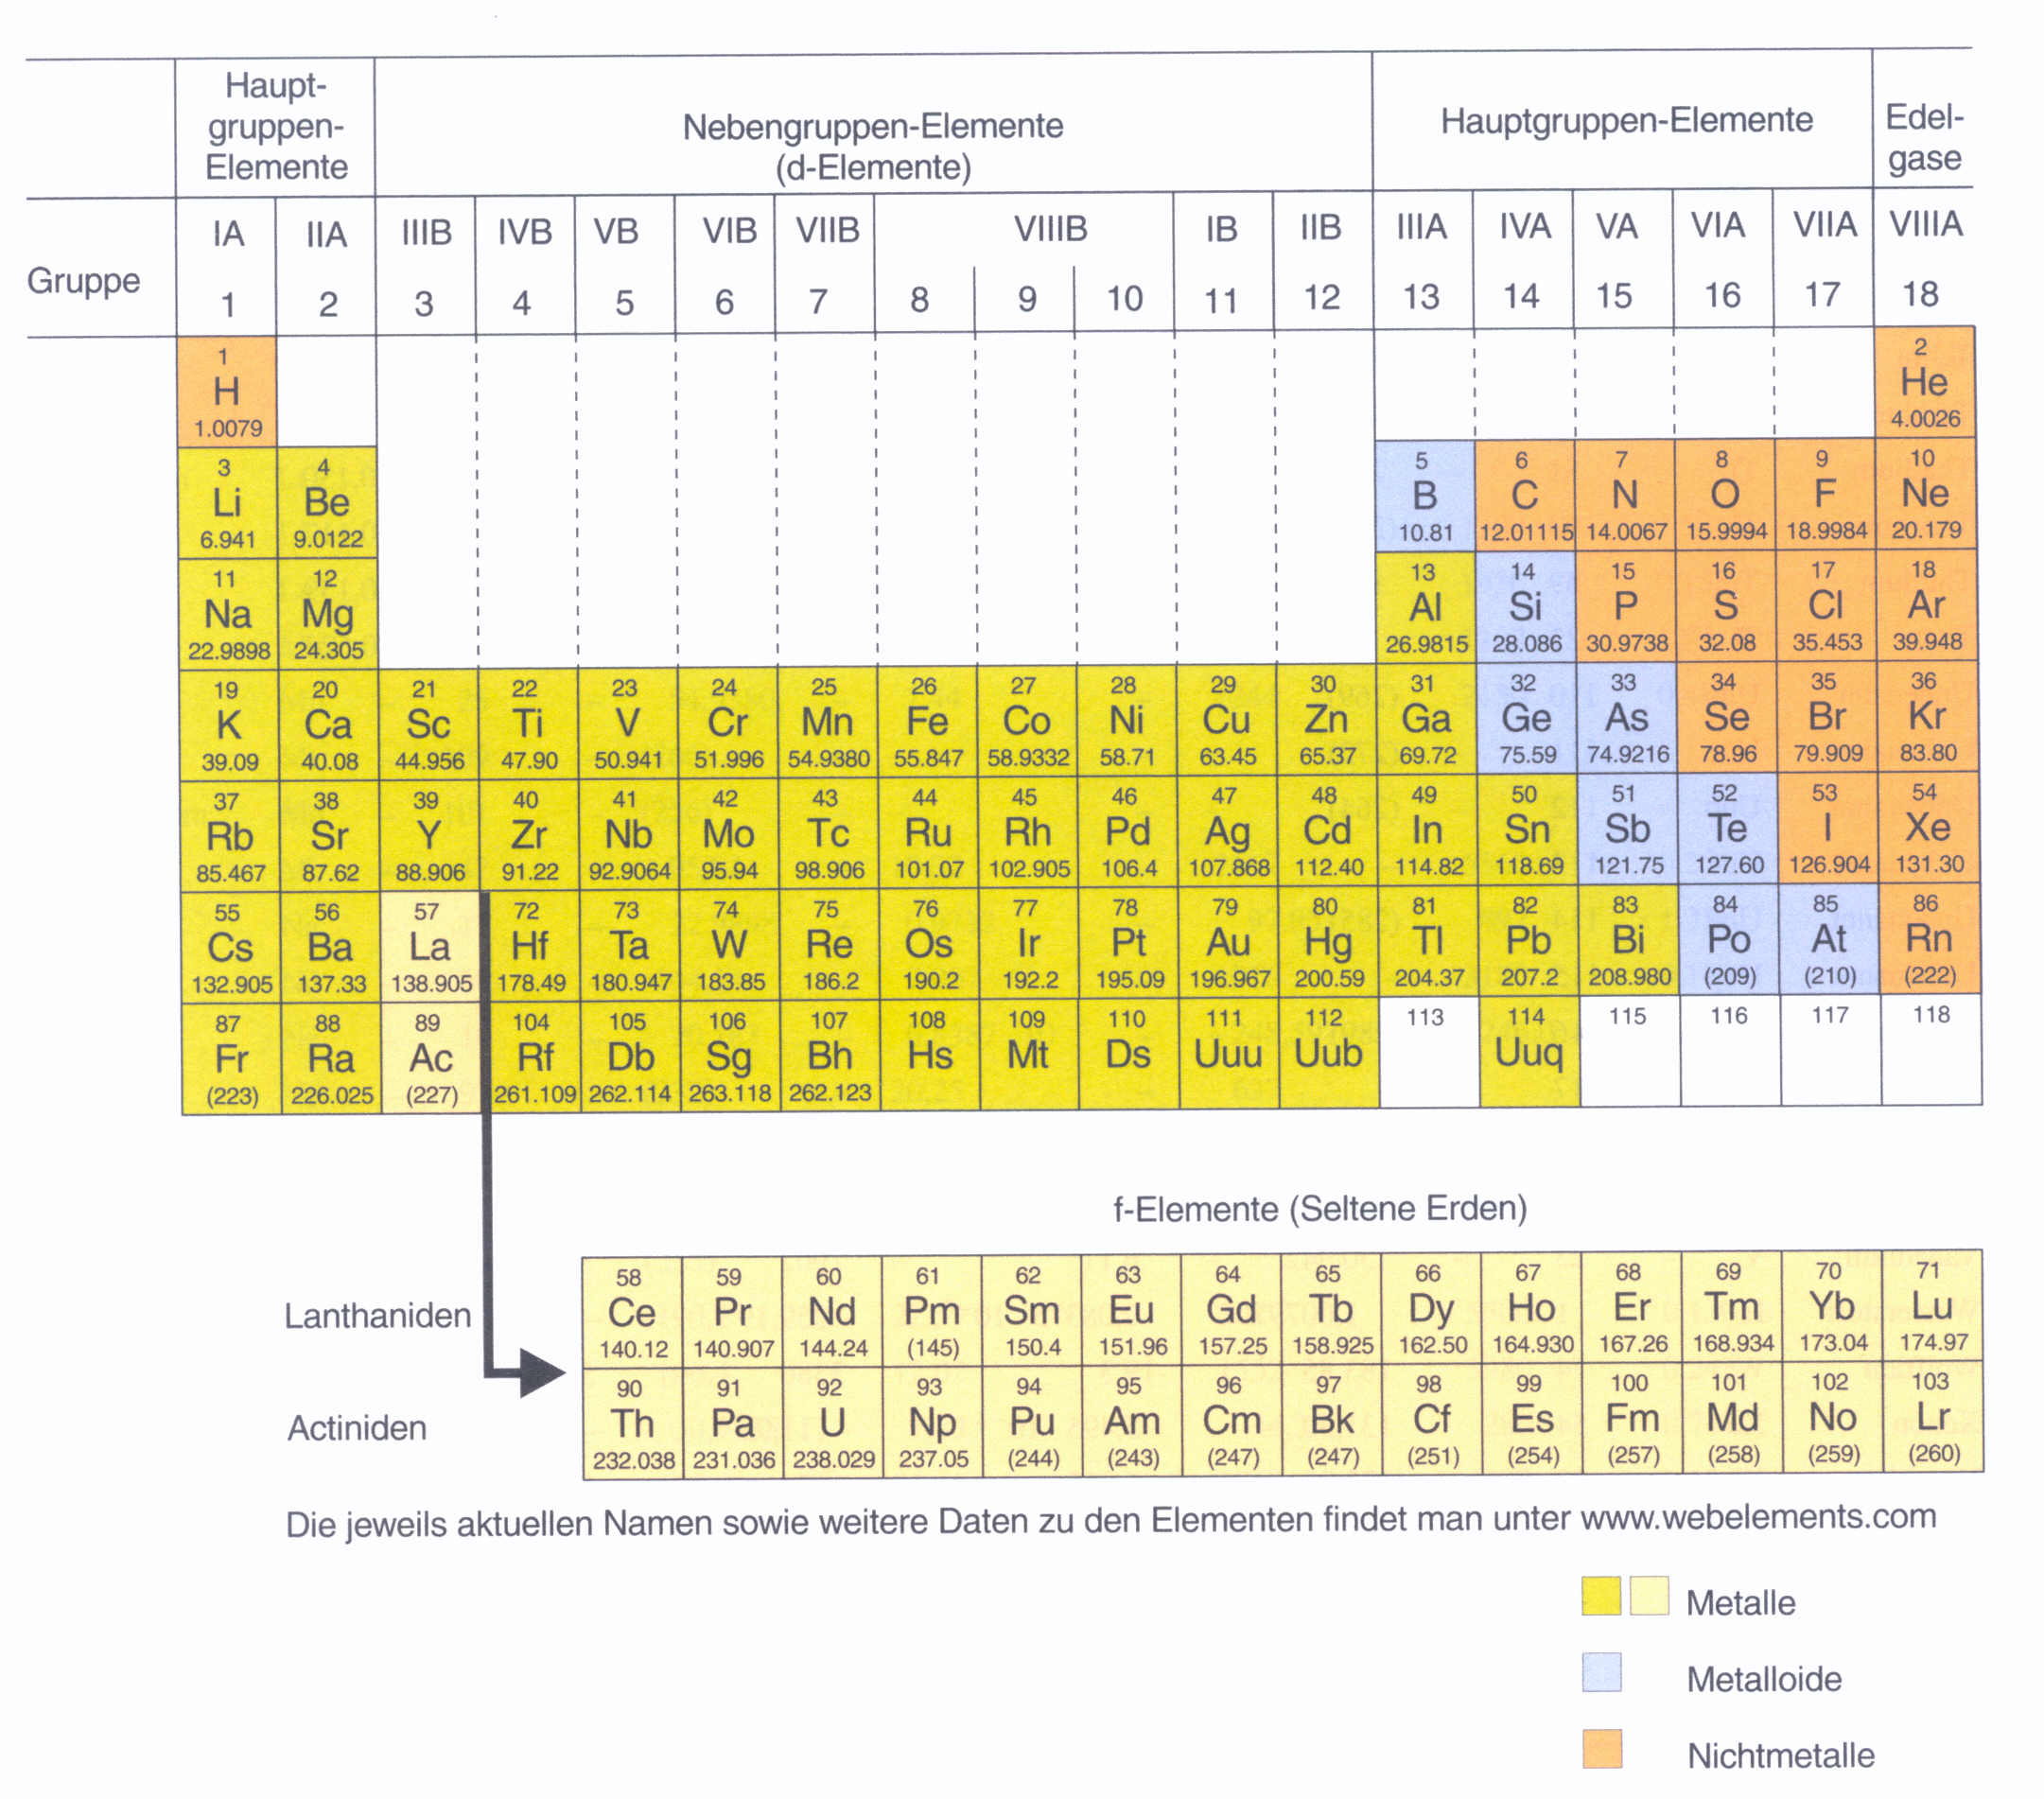 Podział Na Metale I Niemetale Metalle und Nichtmetalle – Chemiewiki